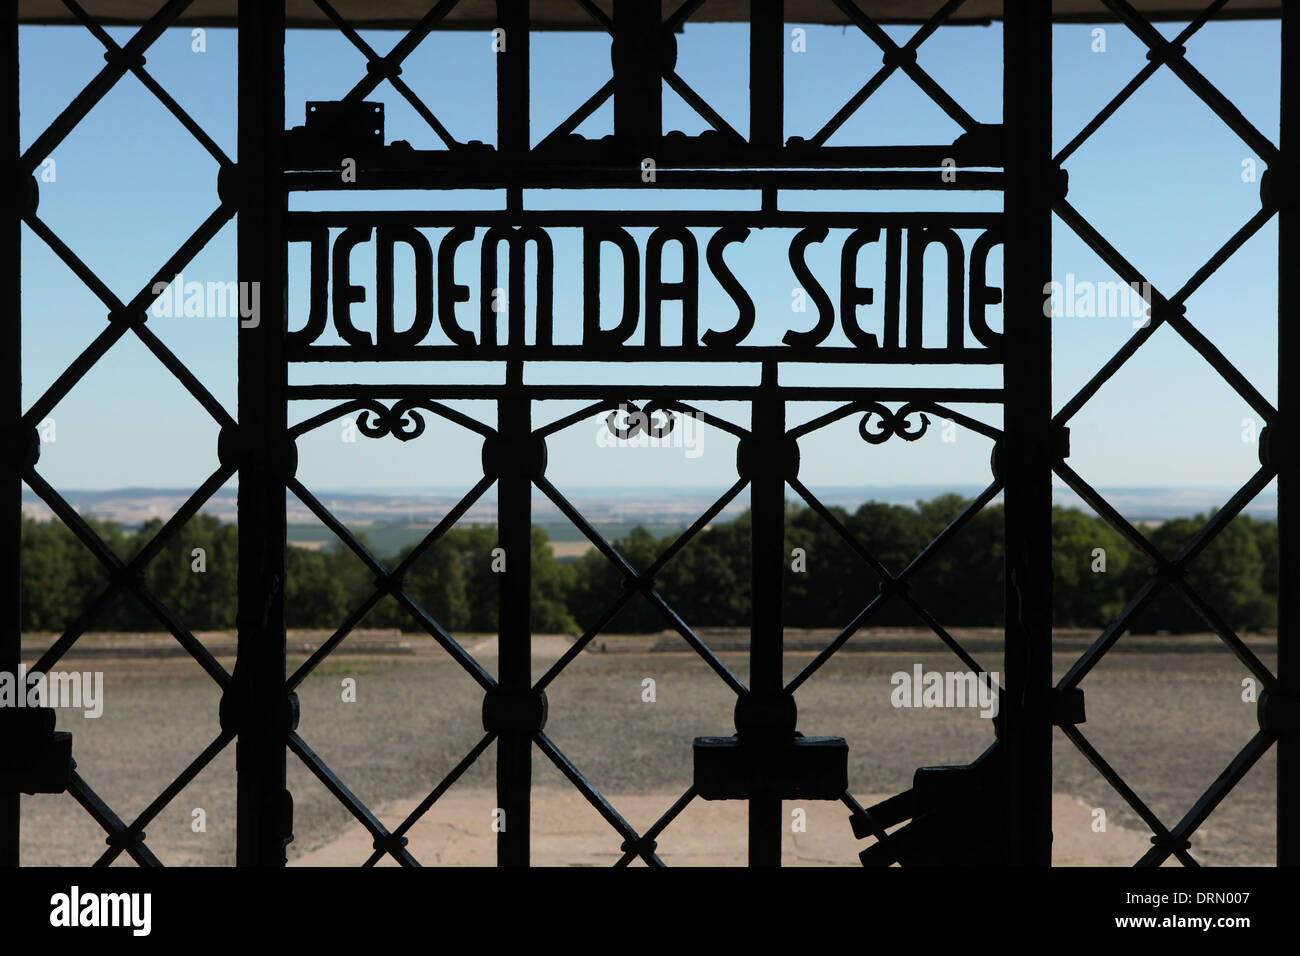 Jedem das Seine. Main gate of Buchenwald concentration camp near Weimar, Germany. Stock Photo